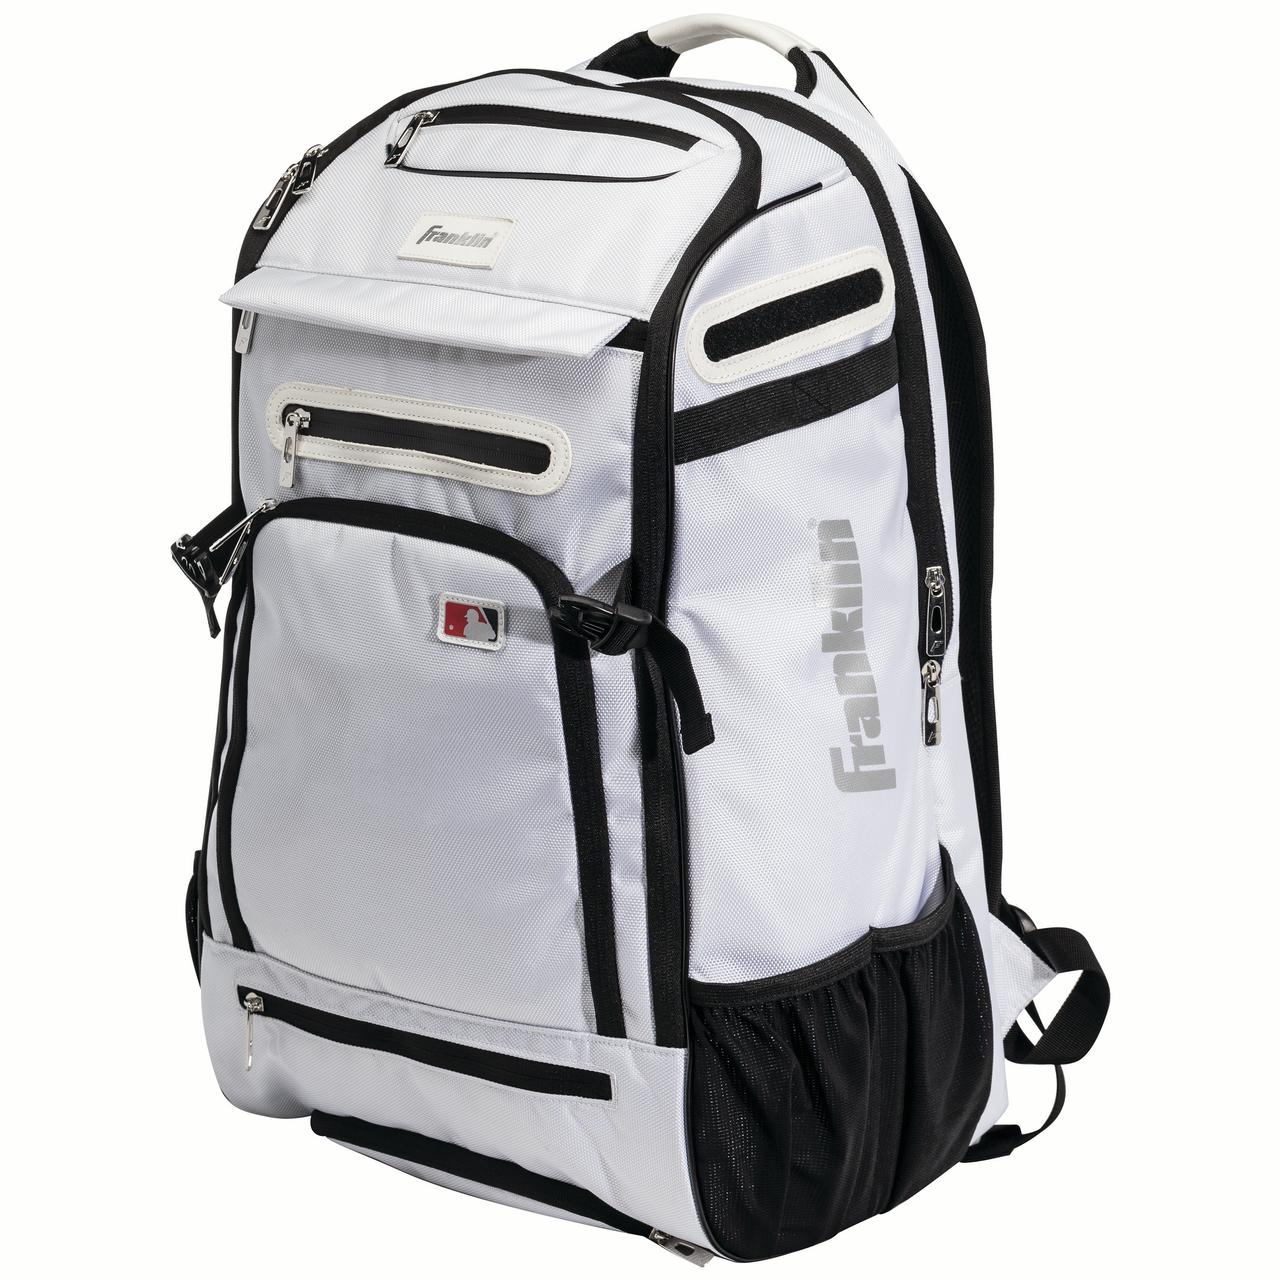 Franklin Sports MLB Traveler Elite Baseball Backpack ? Baseball Bag or Softball Backpack ? White - image 2 of 6